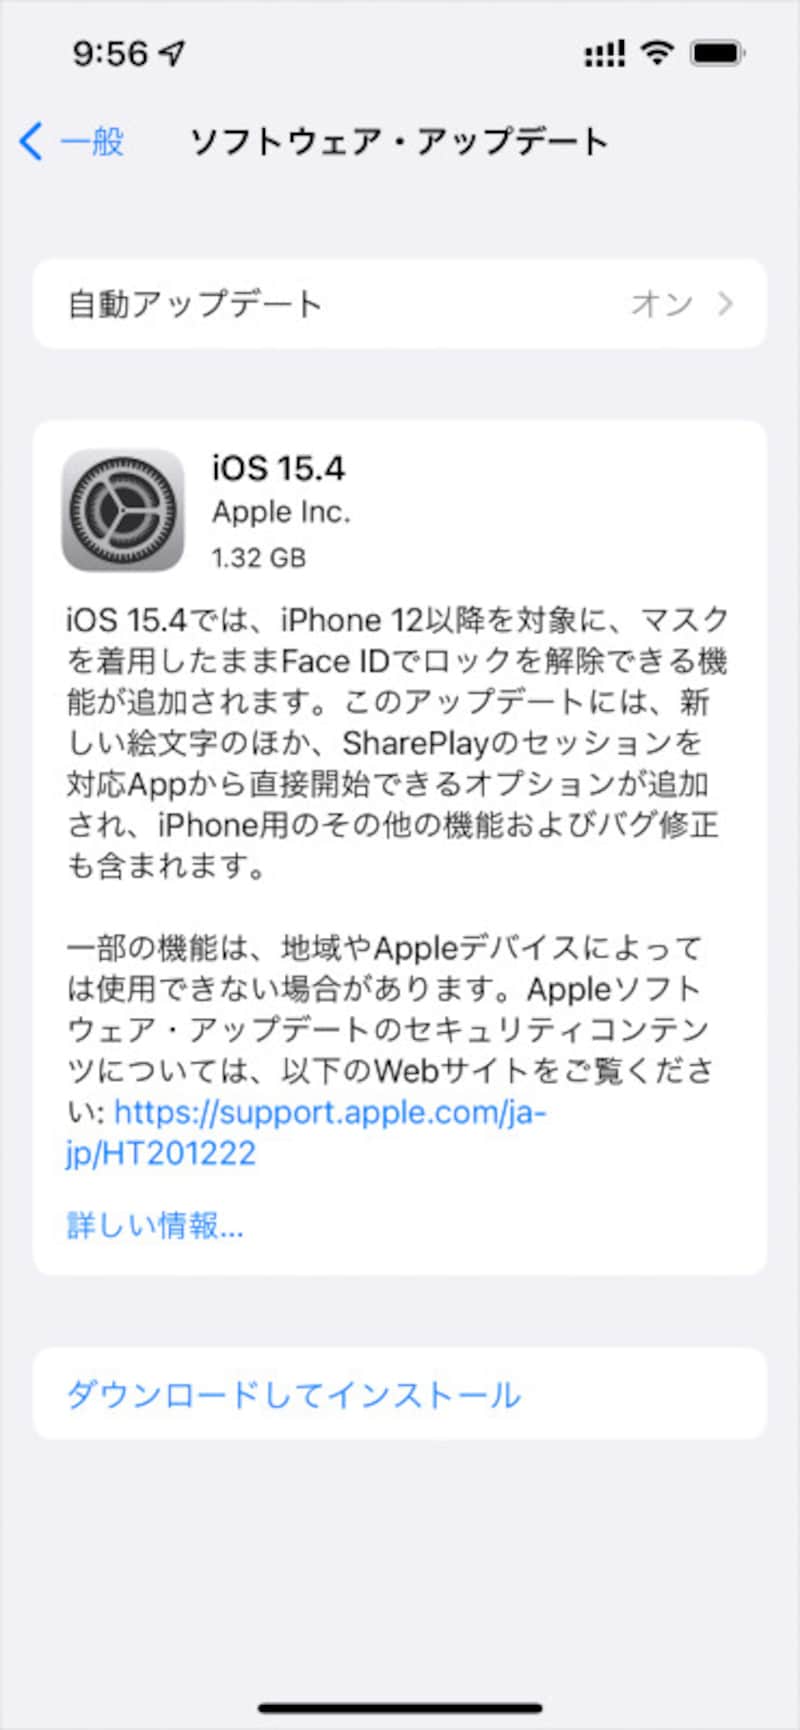 iOS15.4ではiPhone12以降を対象に、マスクを着用したままFace IDでロック解除できる機能が追加されました